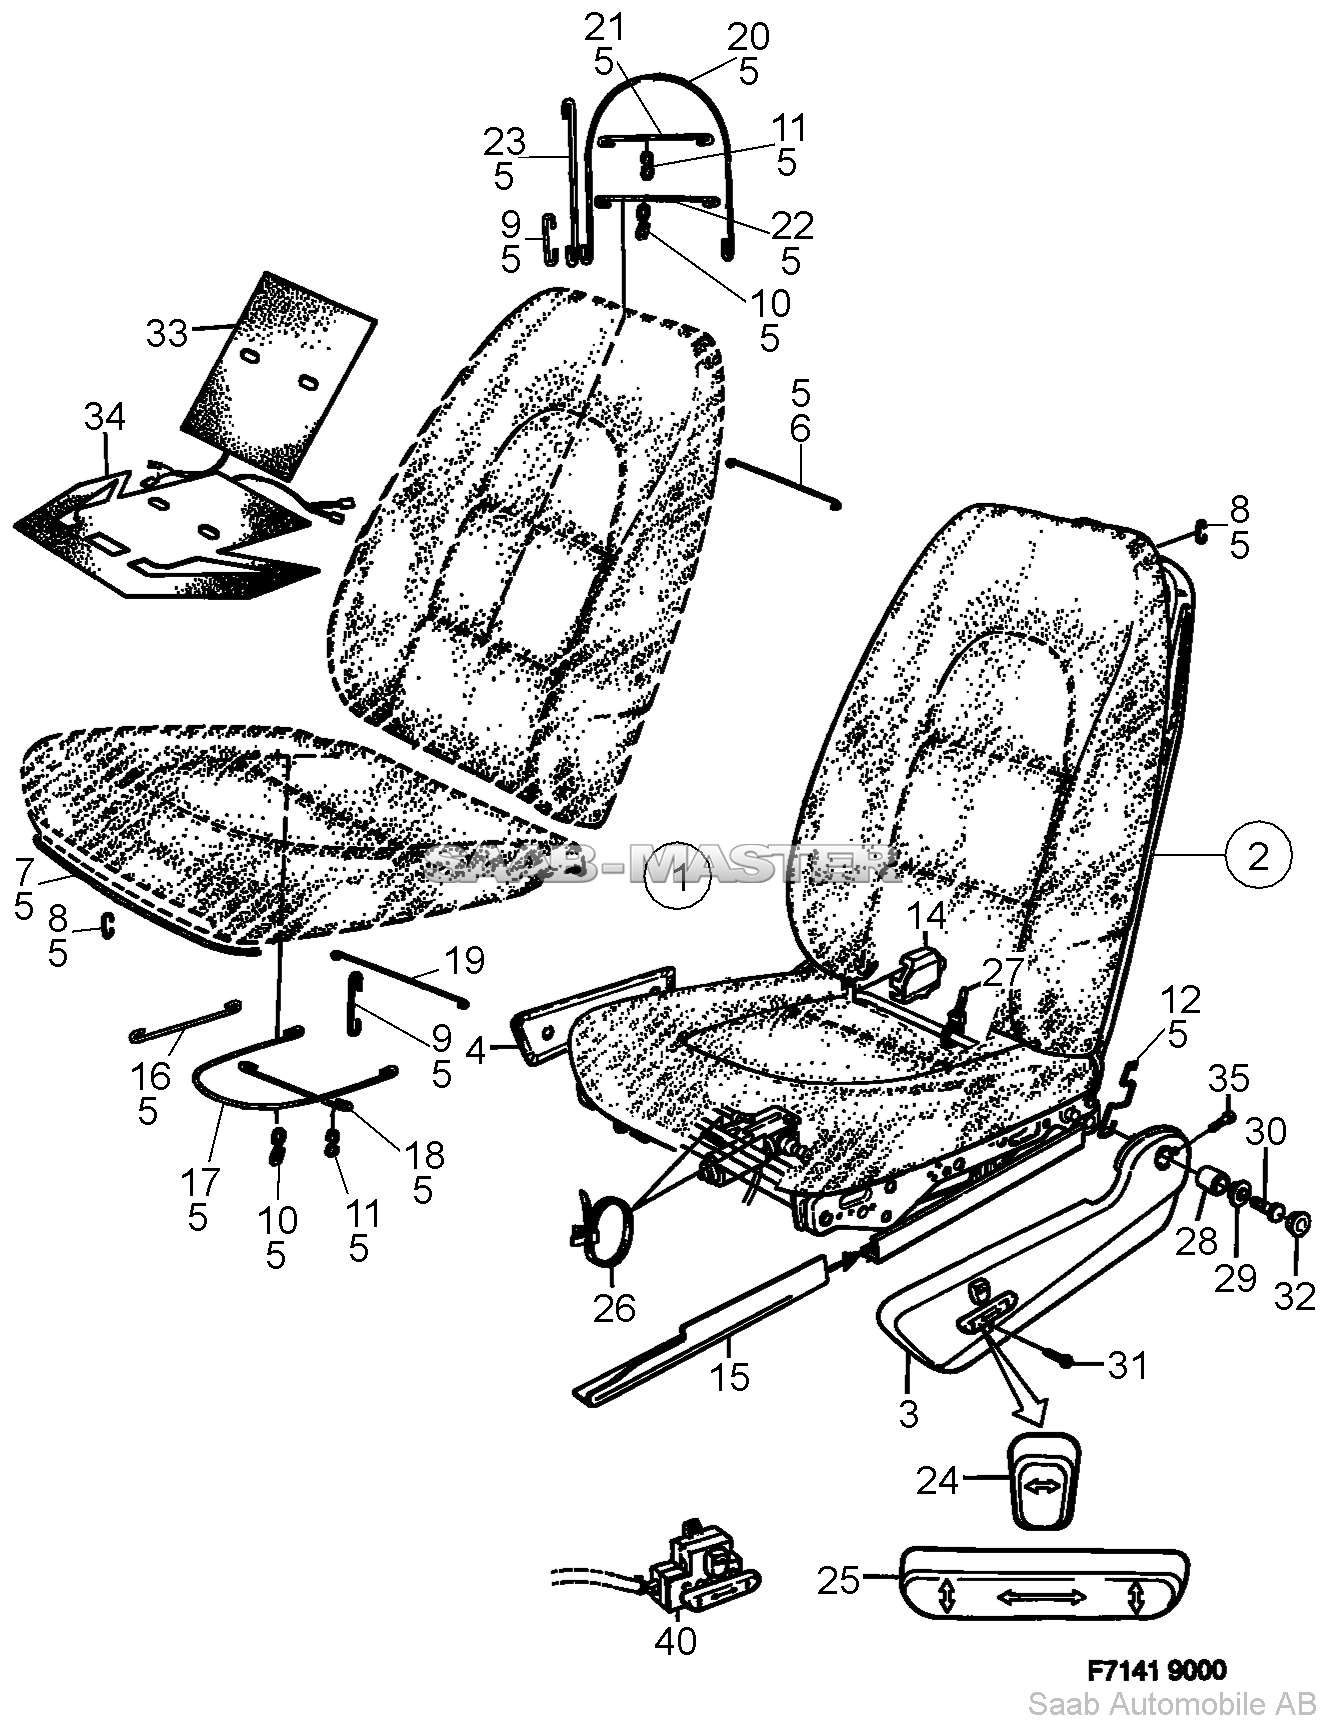 Кресла Часть 1 - Электроманеврируемые   Касается также SE 1988B.